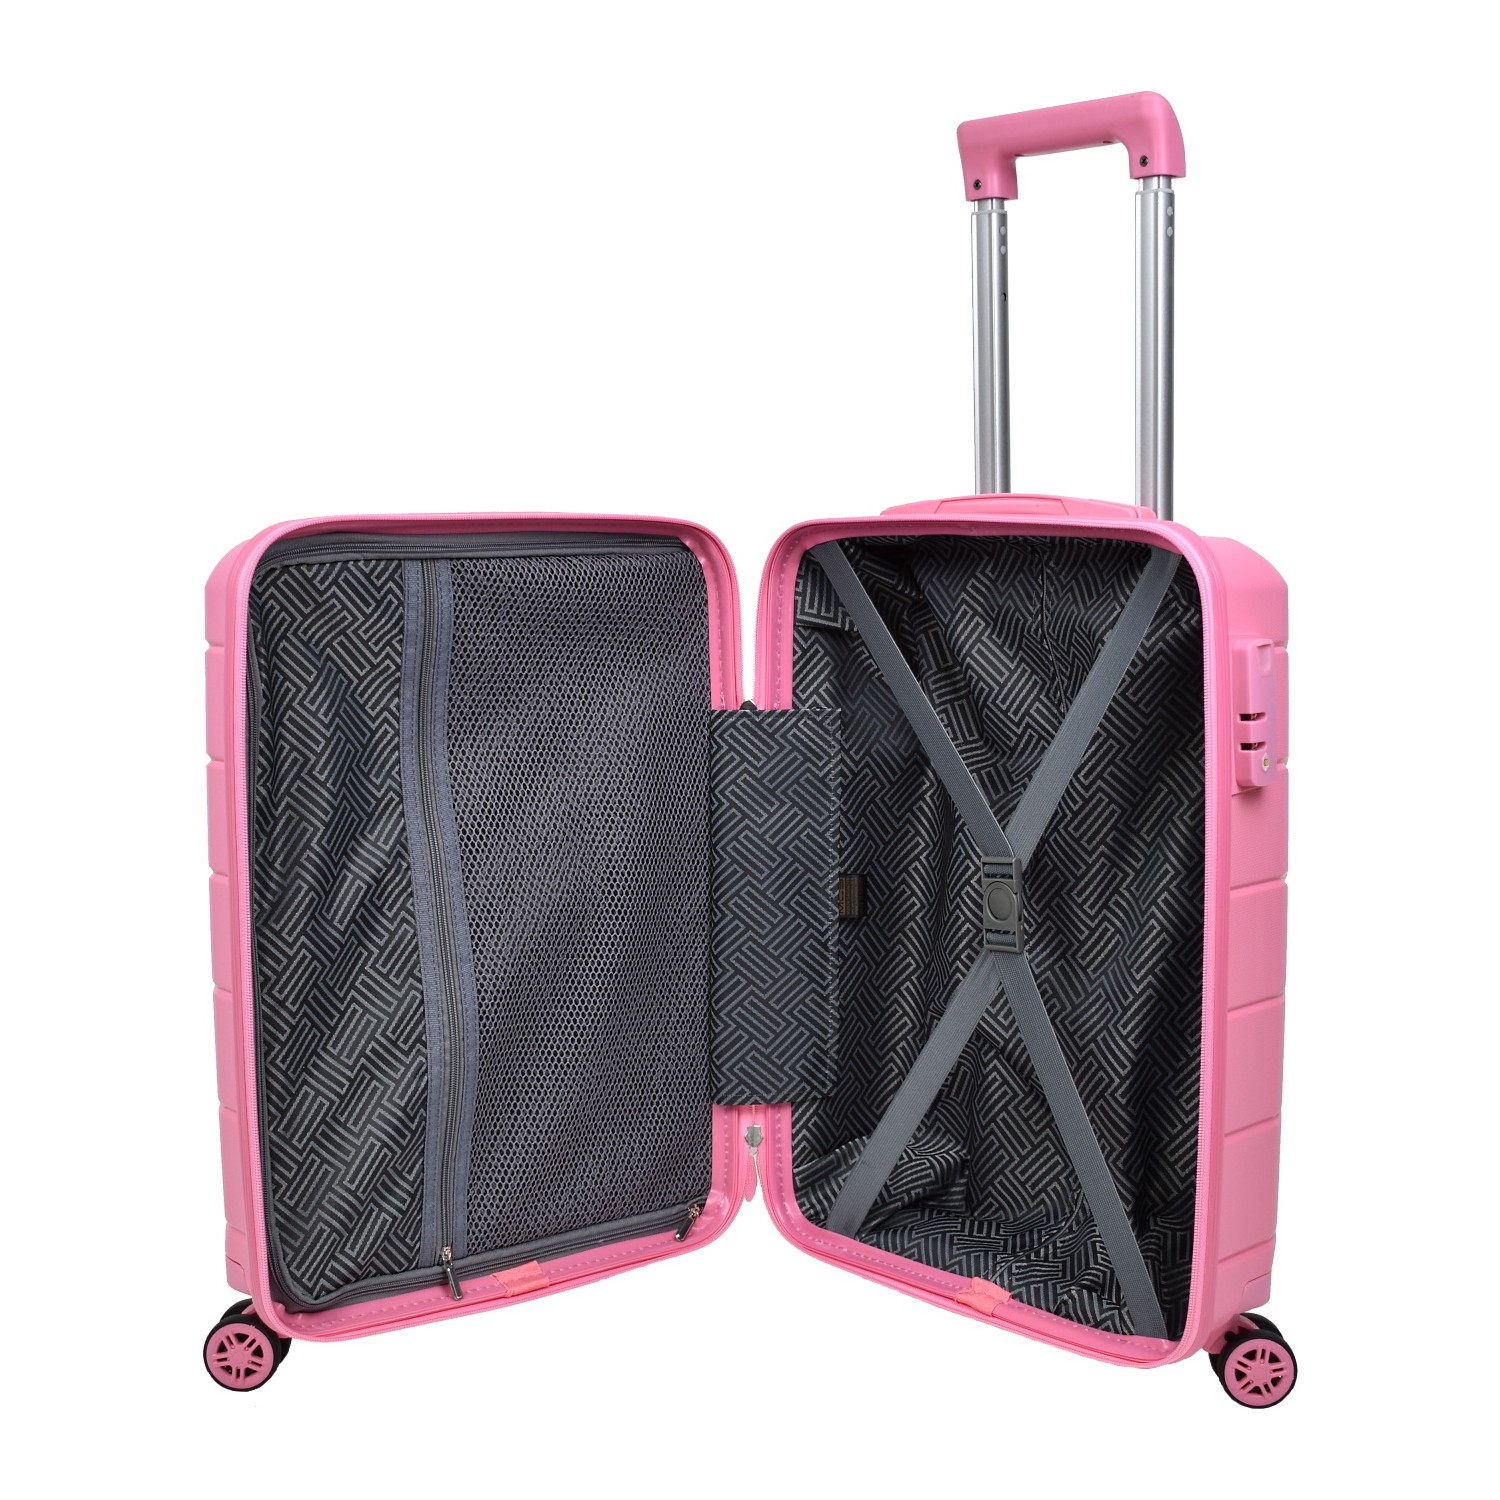 Средний чемодан из полипропилена MCS V366 M PINK! Для 18 кг! - 2